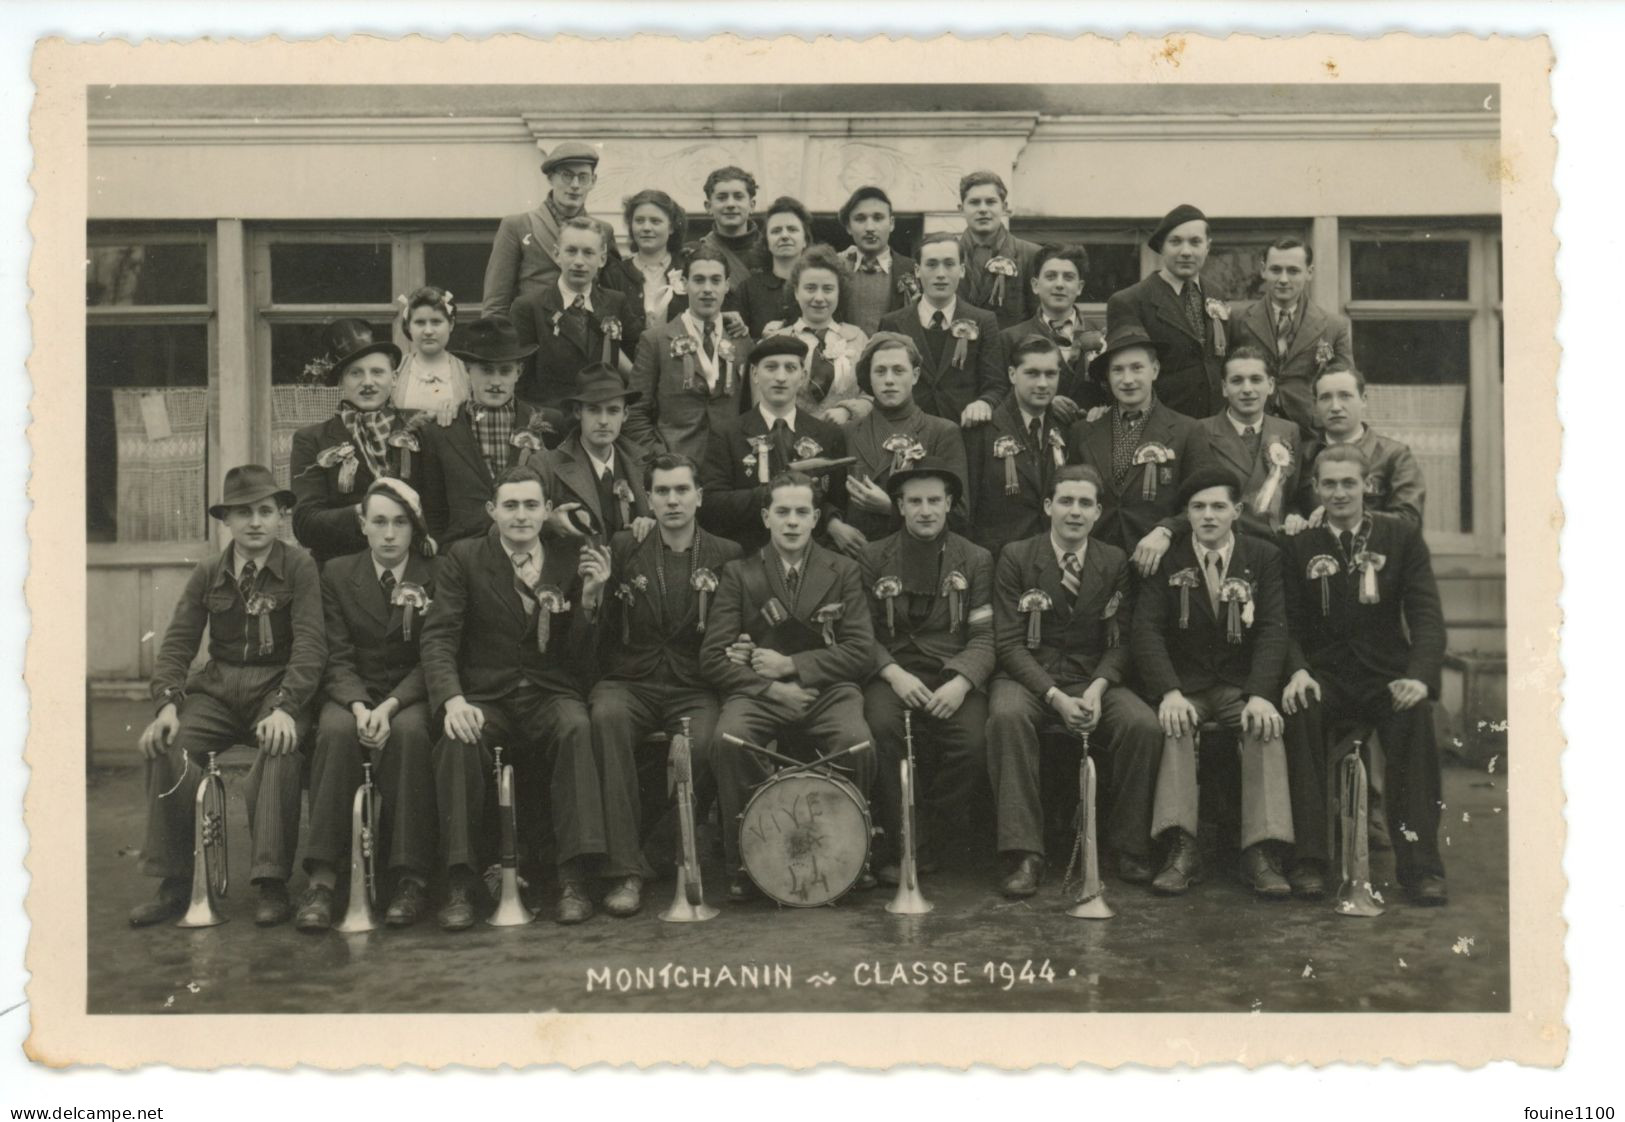 PHOTO Au Format 15,8 X 10,5 Cm MONTCHANIN Classe 1944 ( Conscrits ) Photographe ROBILLARD - Unclassified